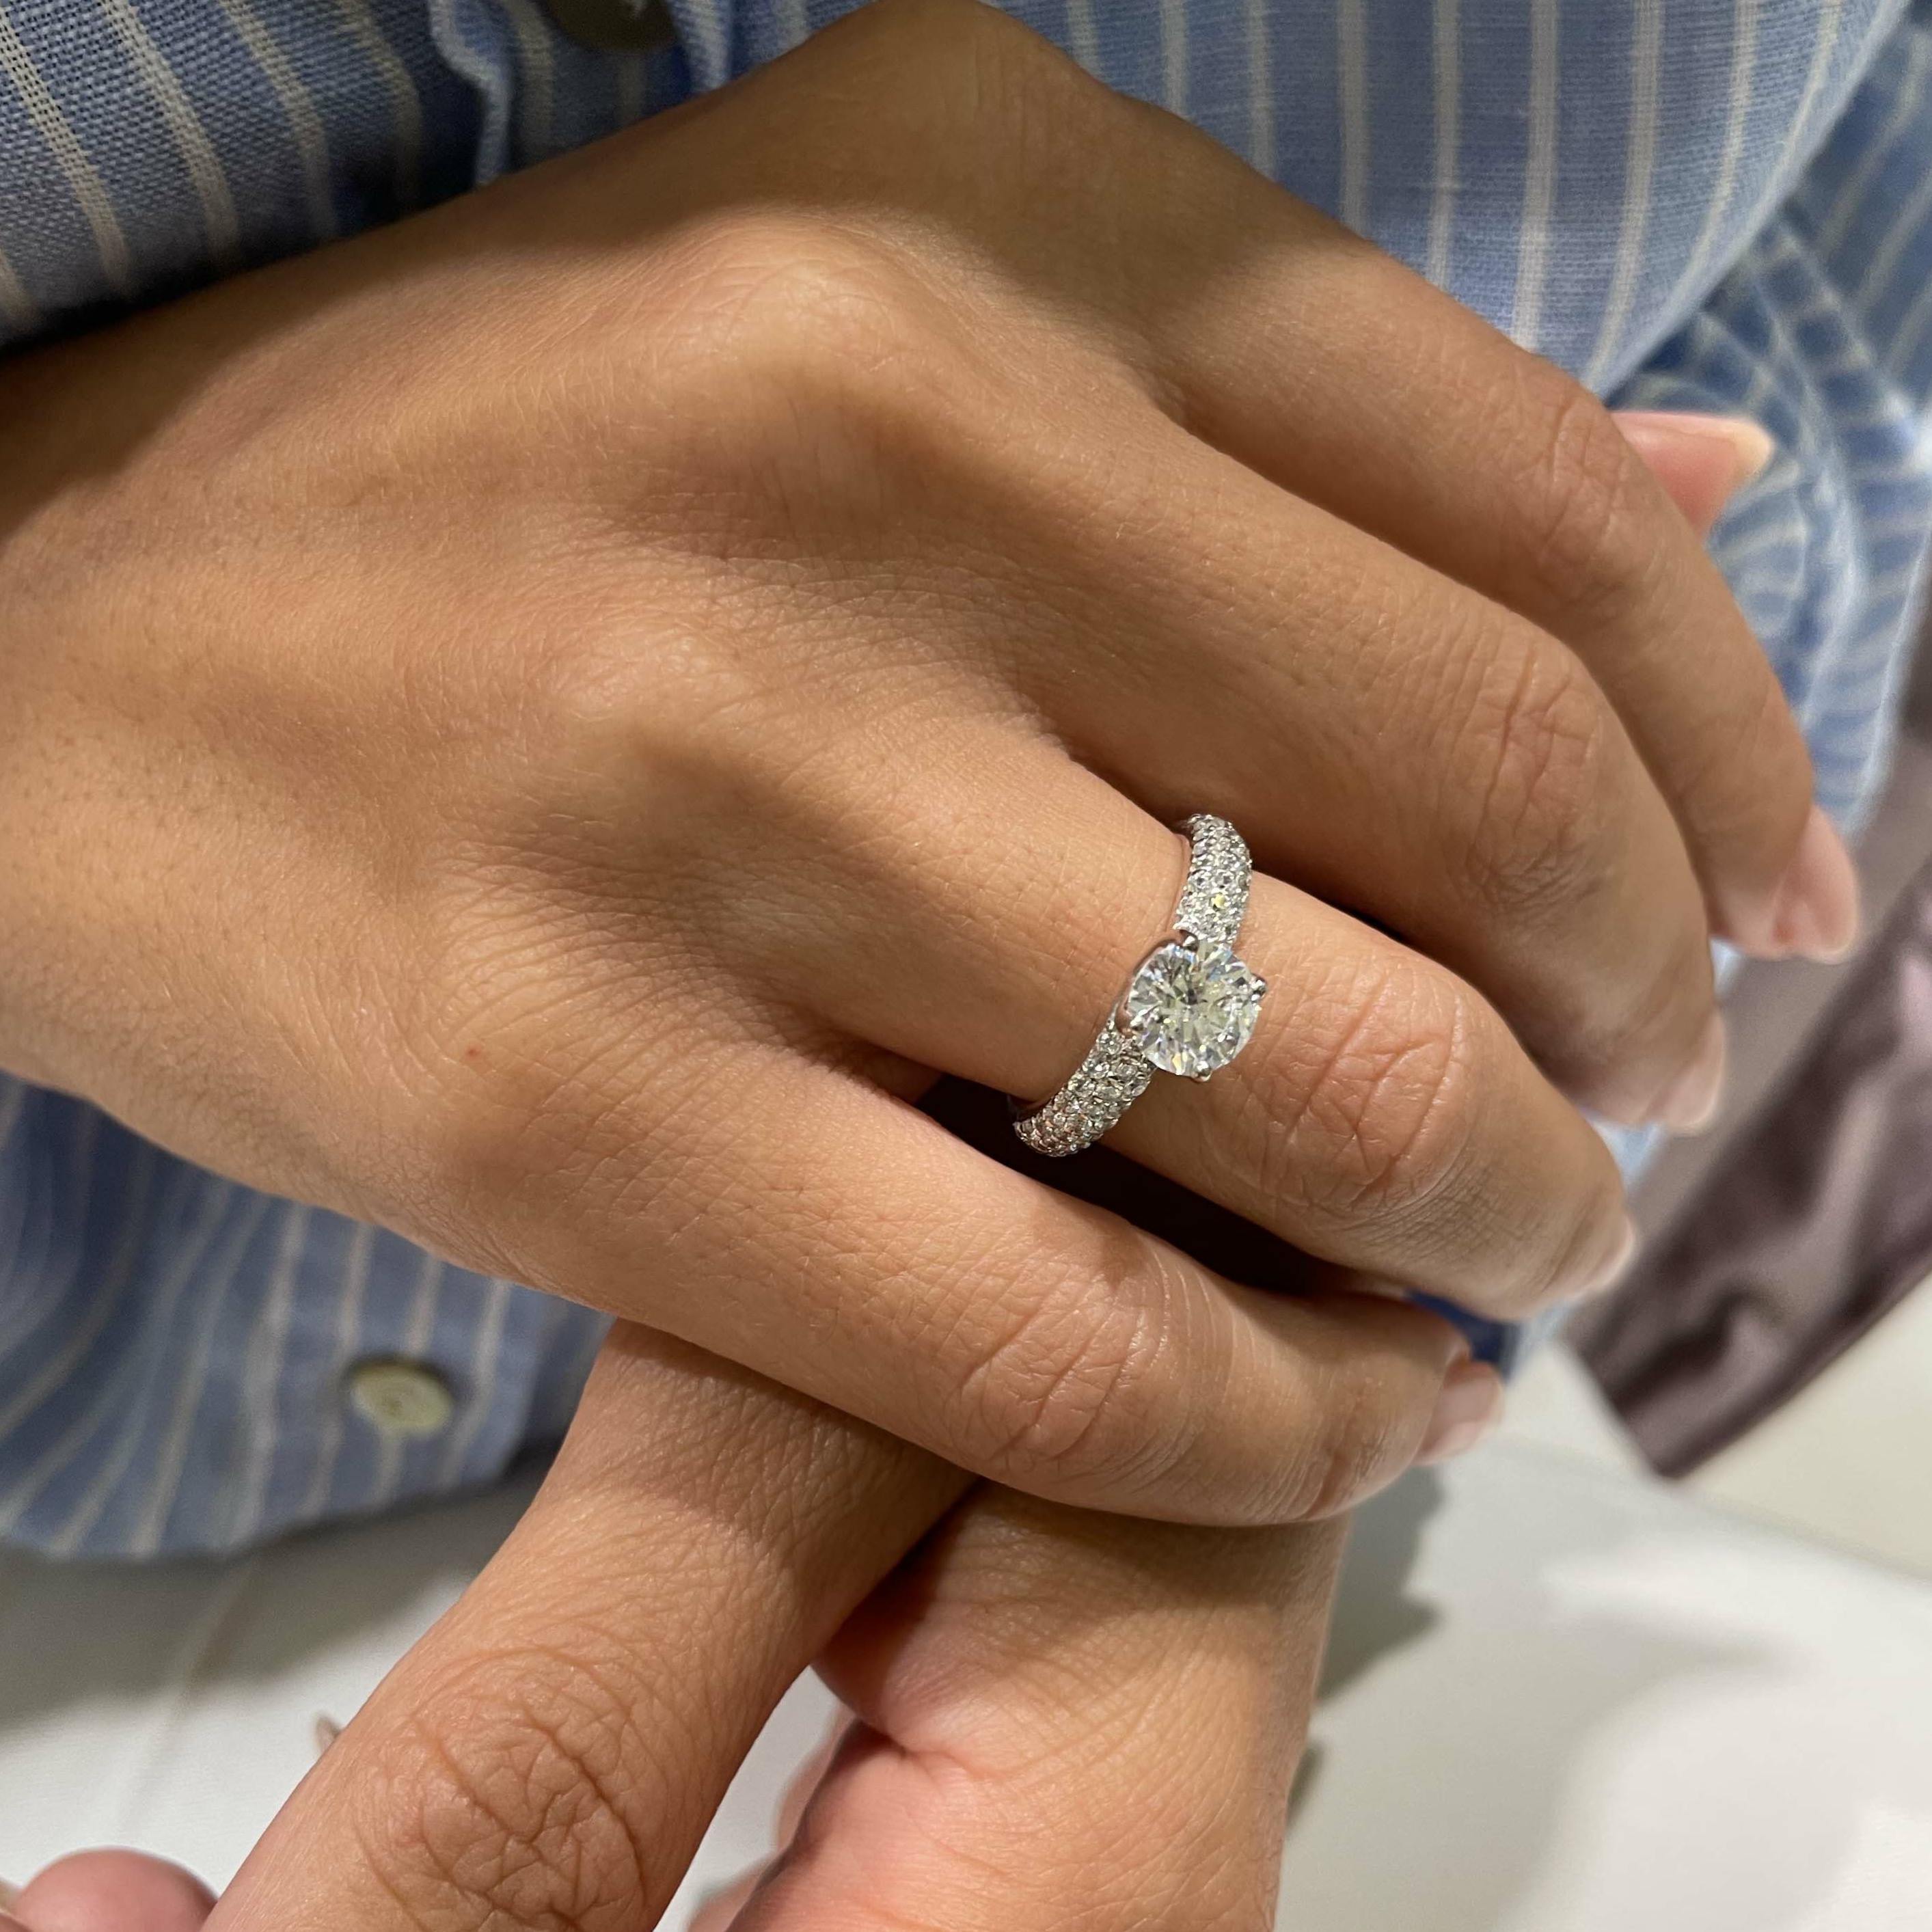 Alora Diamond Engagement Ring   (1.5 Carat) -Platinum